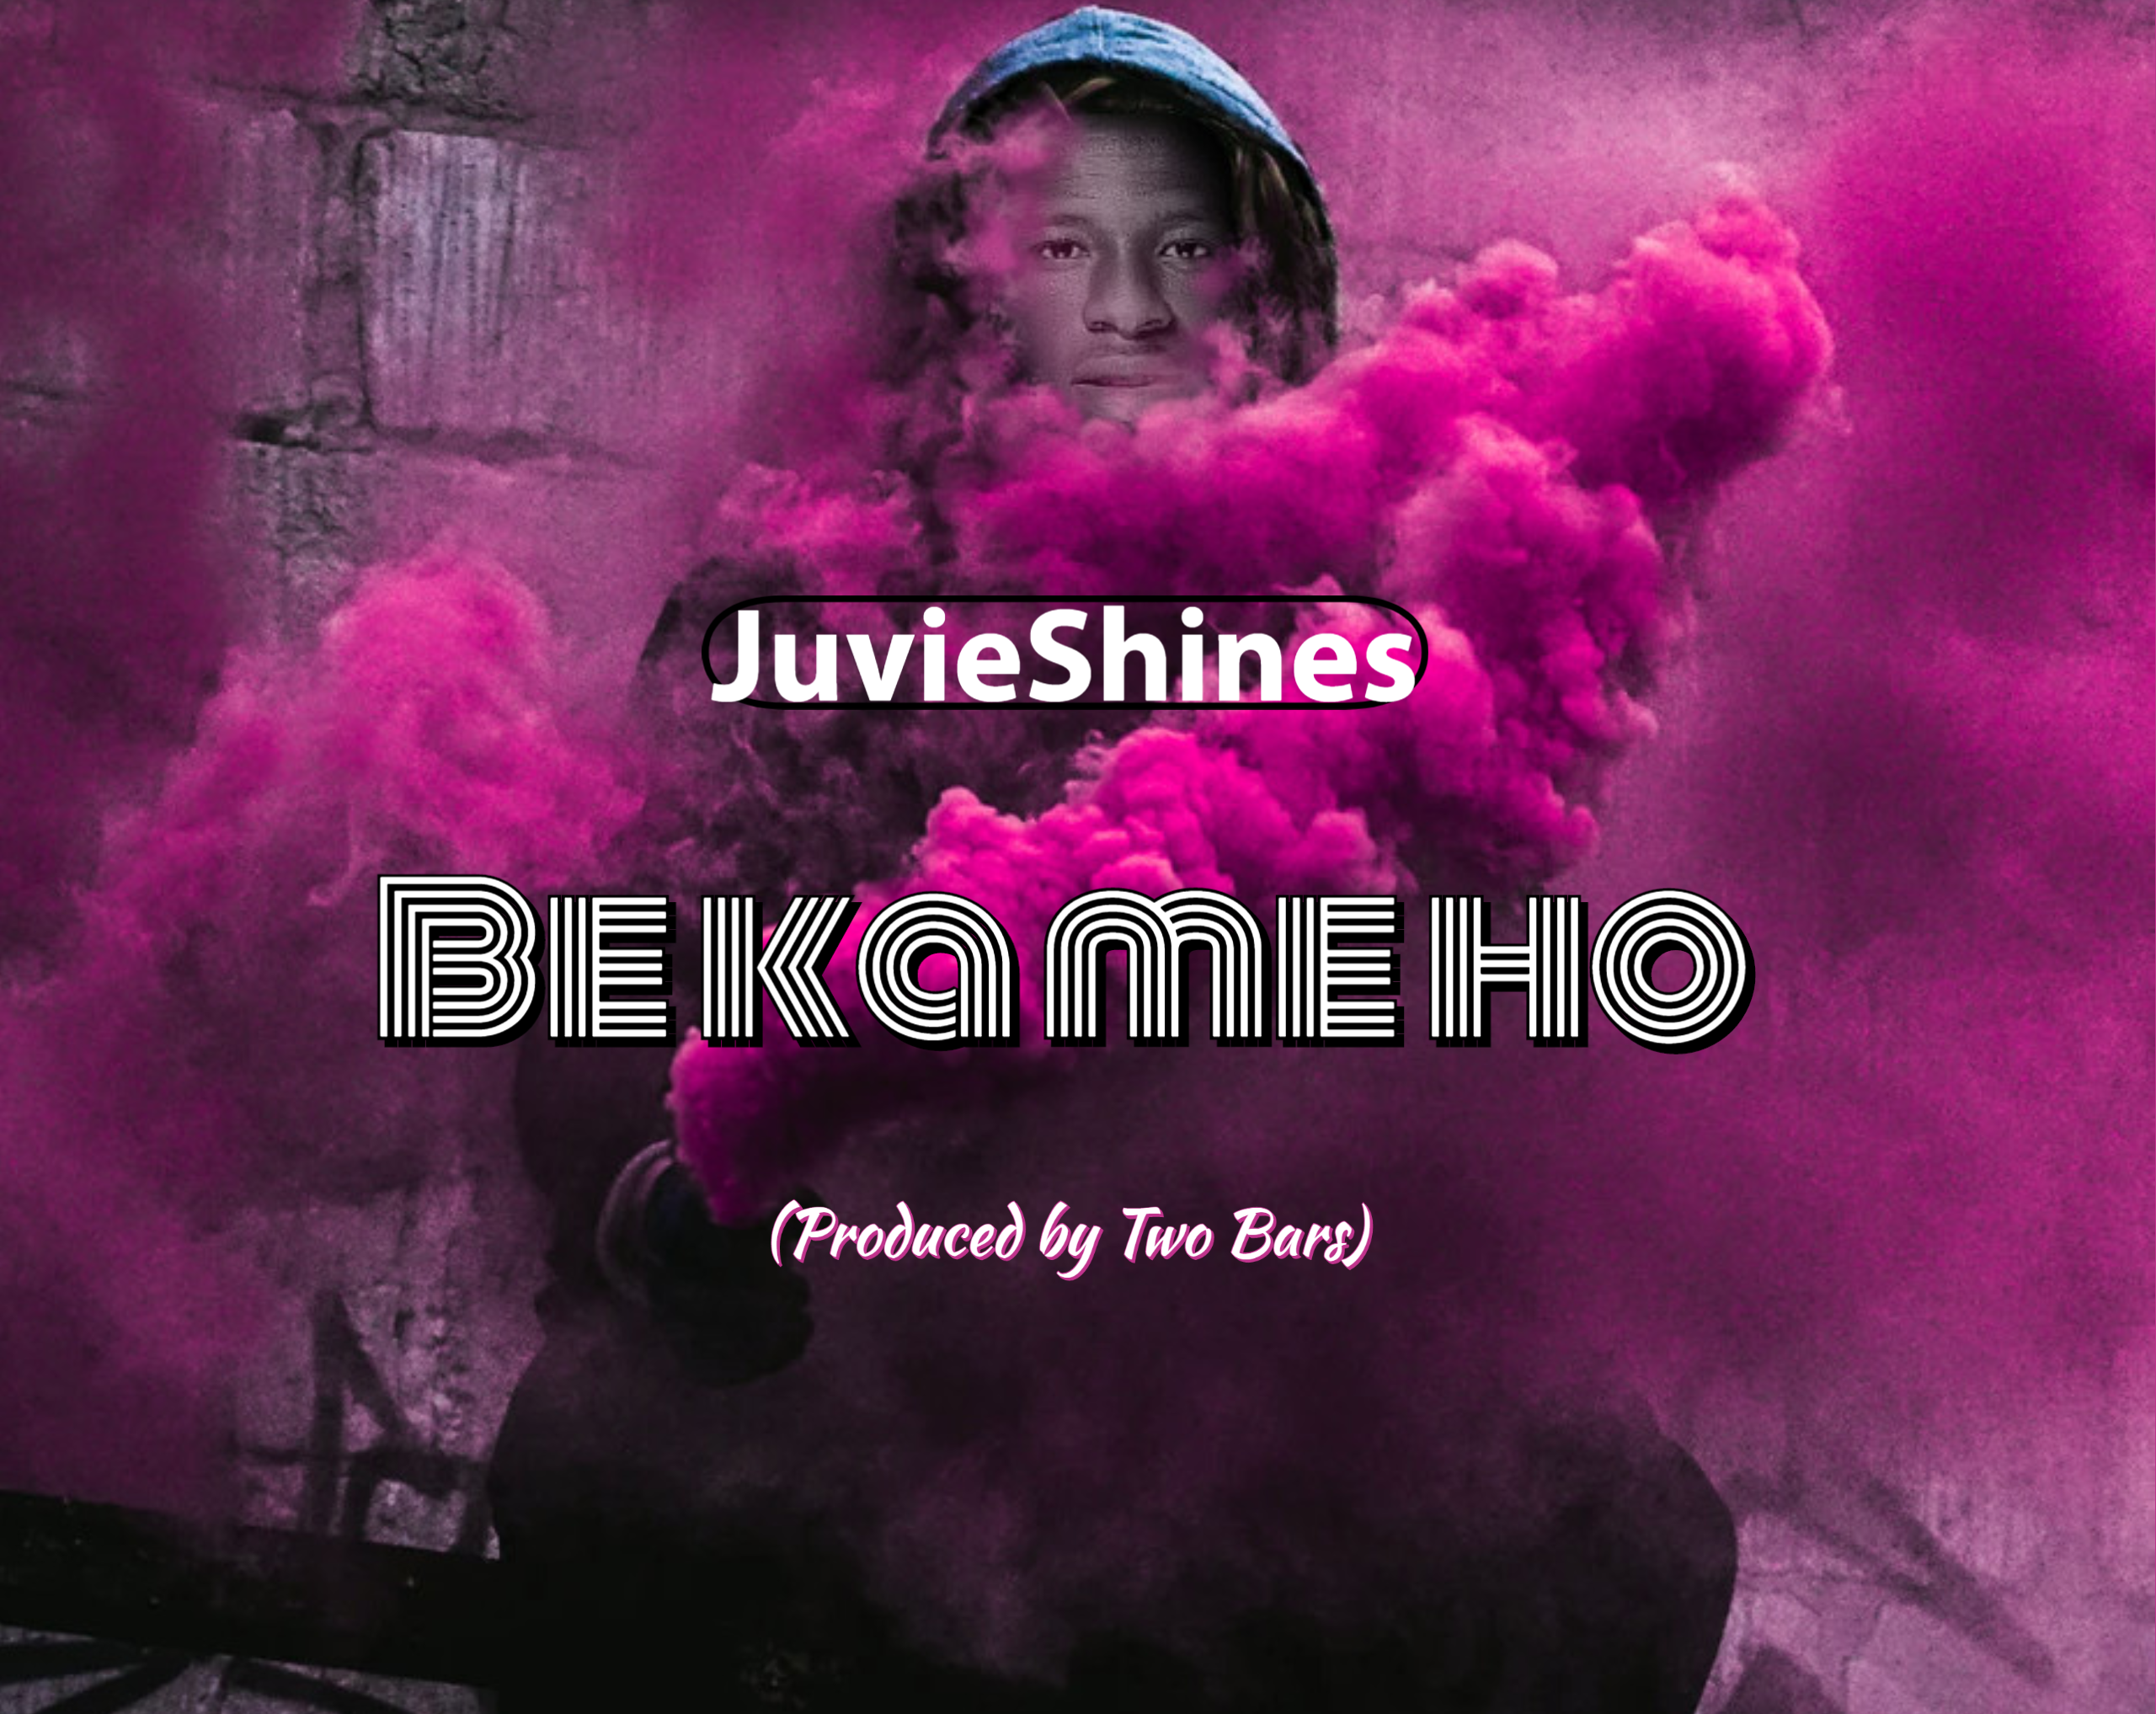 JuvieShines - Be Ka Me Ho